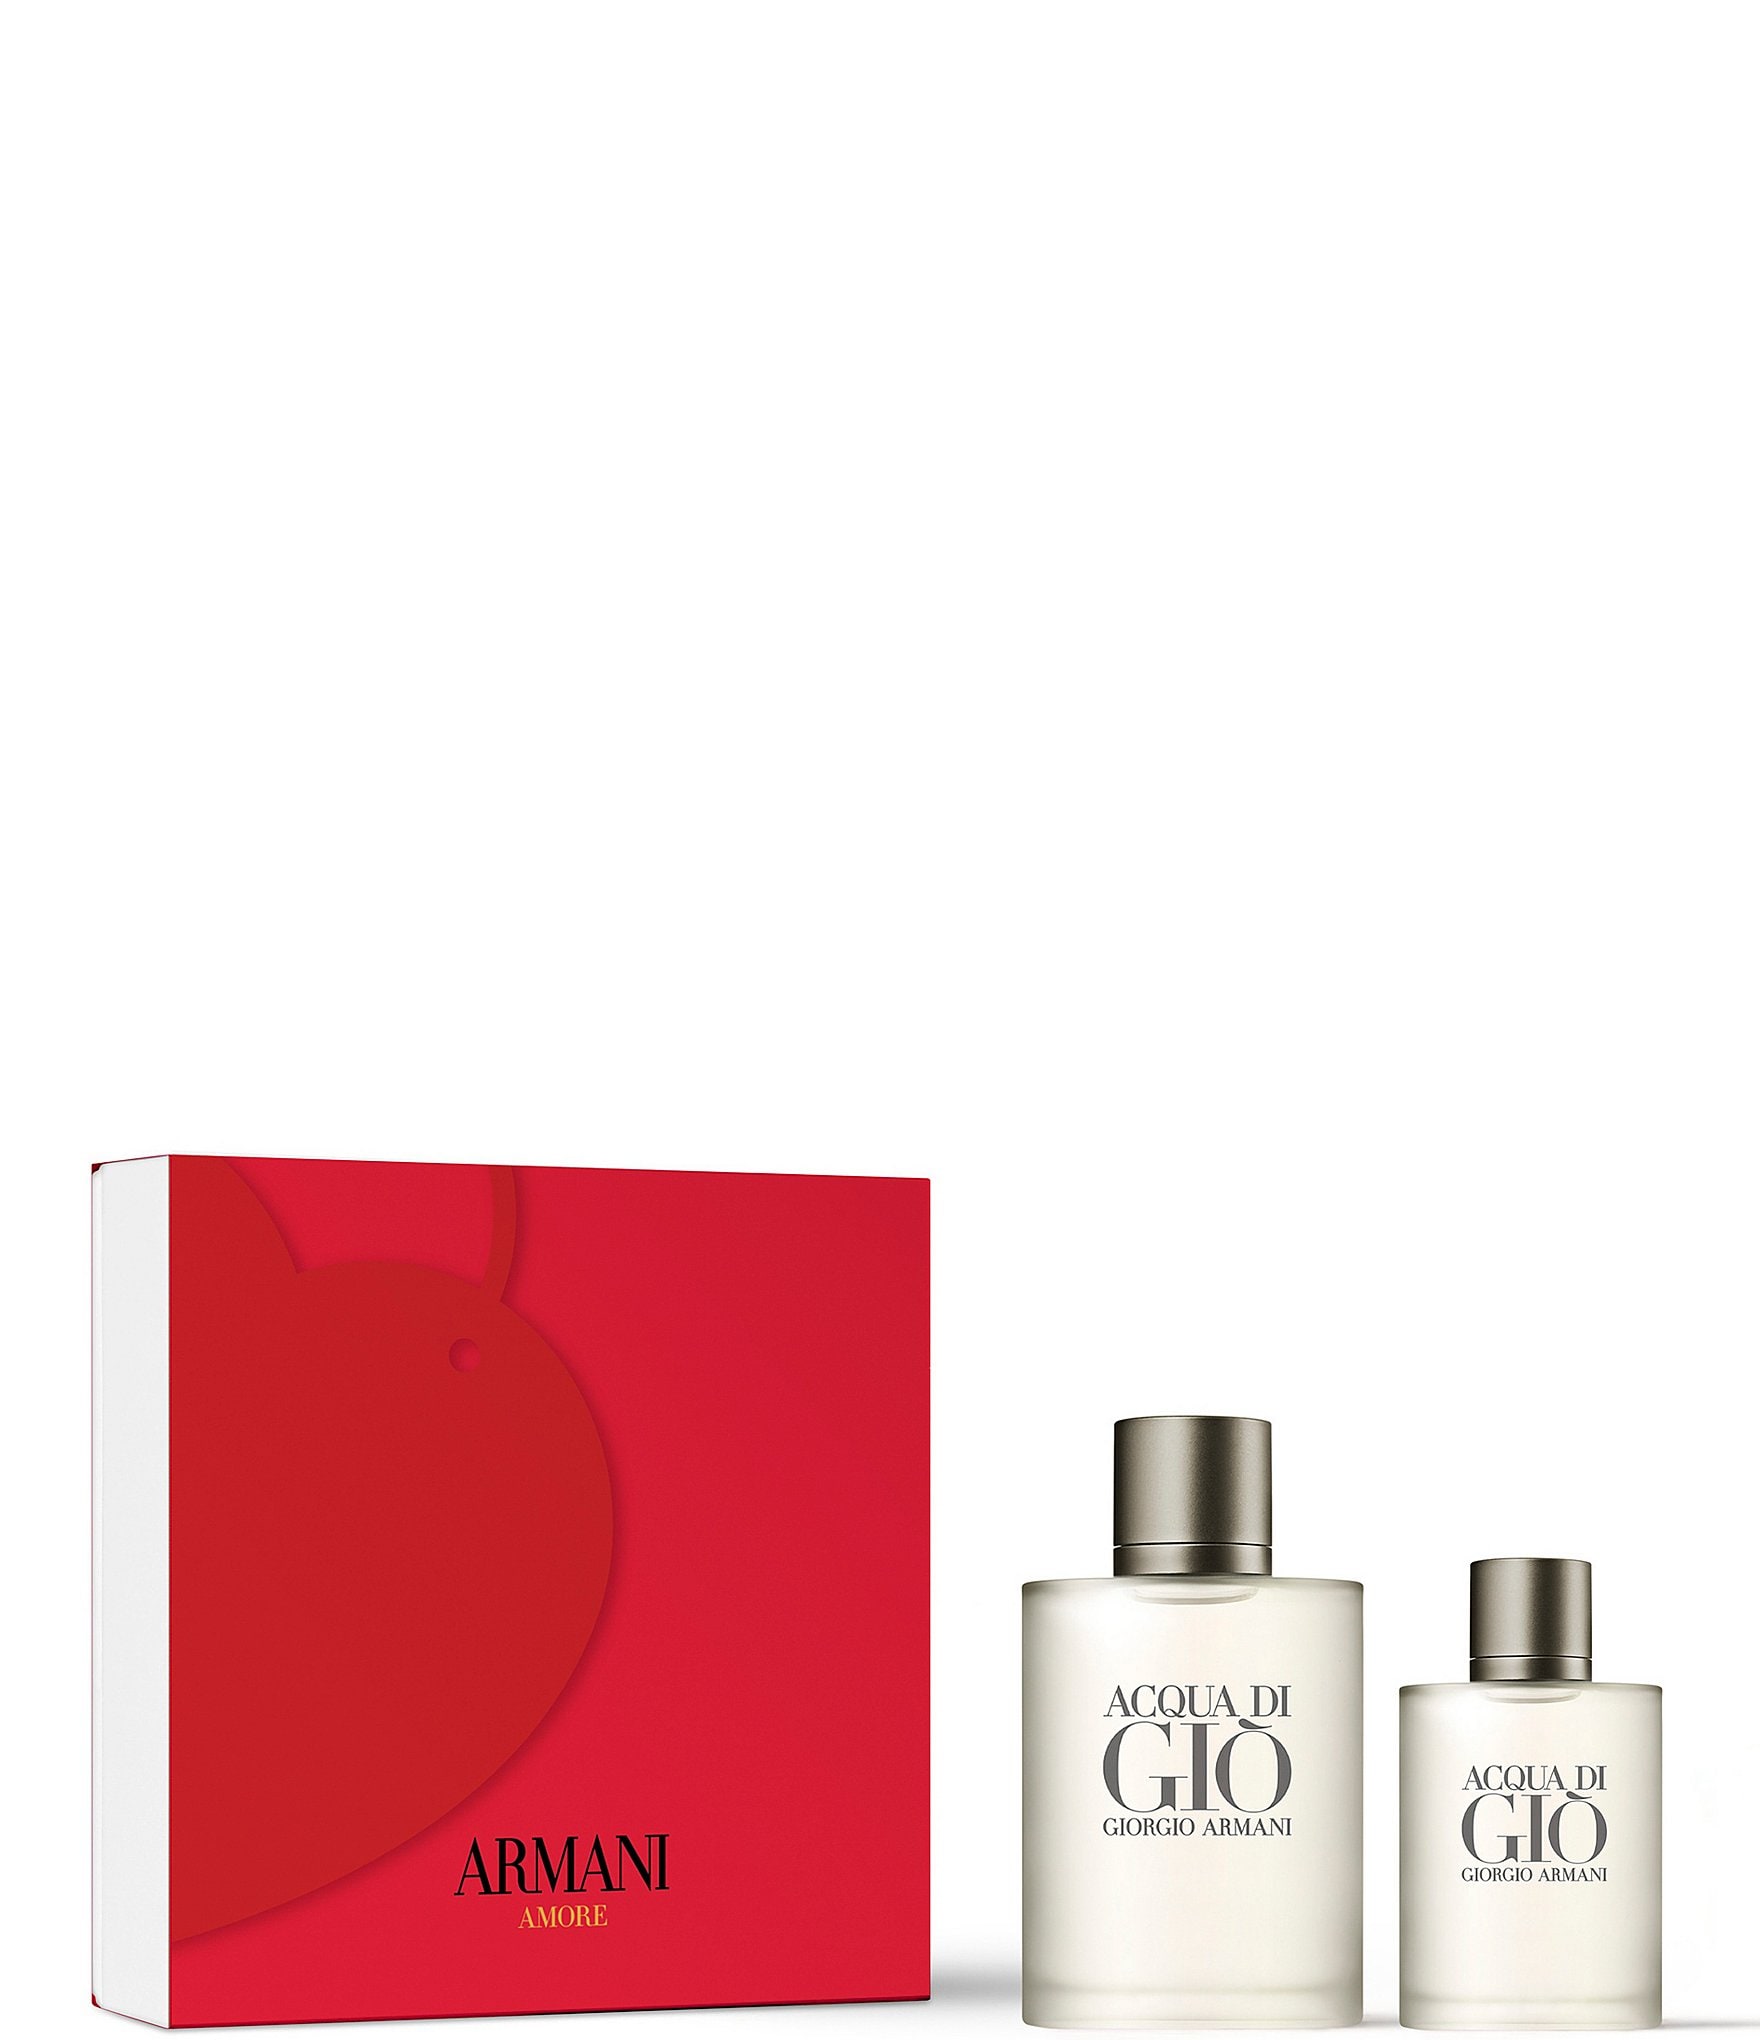 Giorgio Armani Men's Cologne & Fragrance Gifts & Value Sets | Dillard's